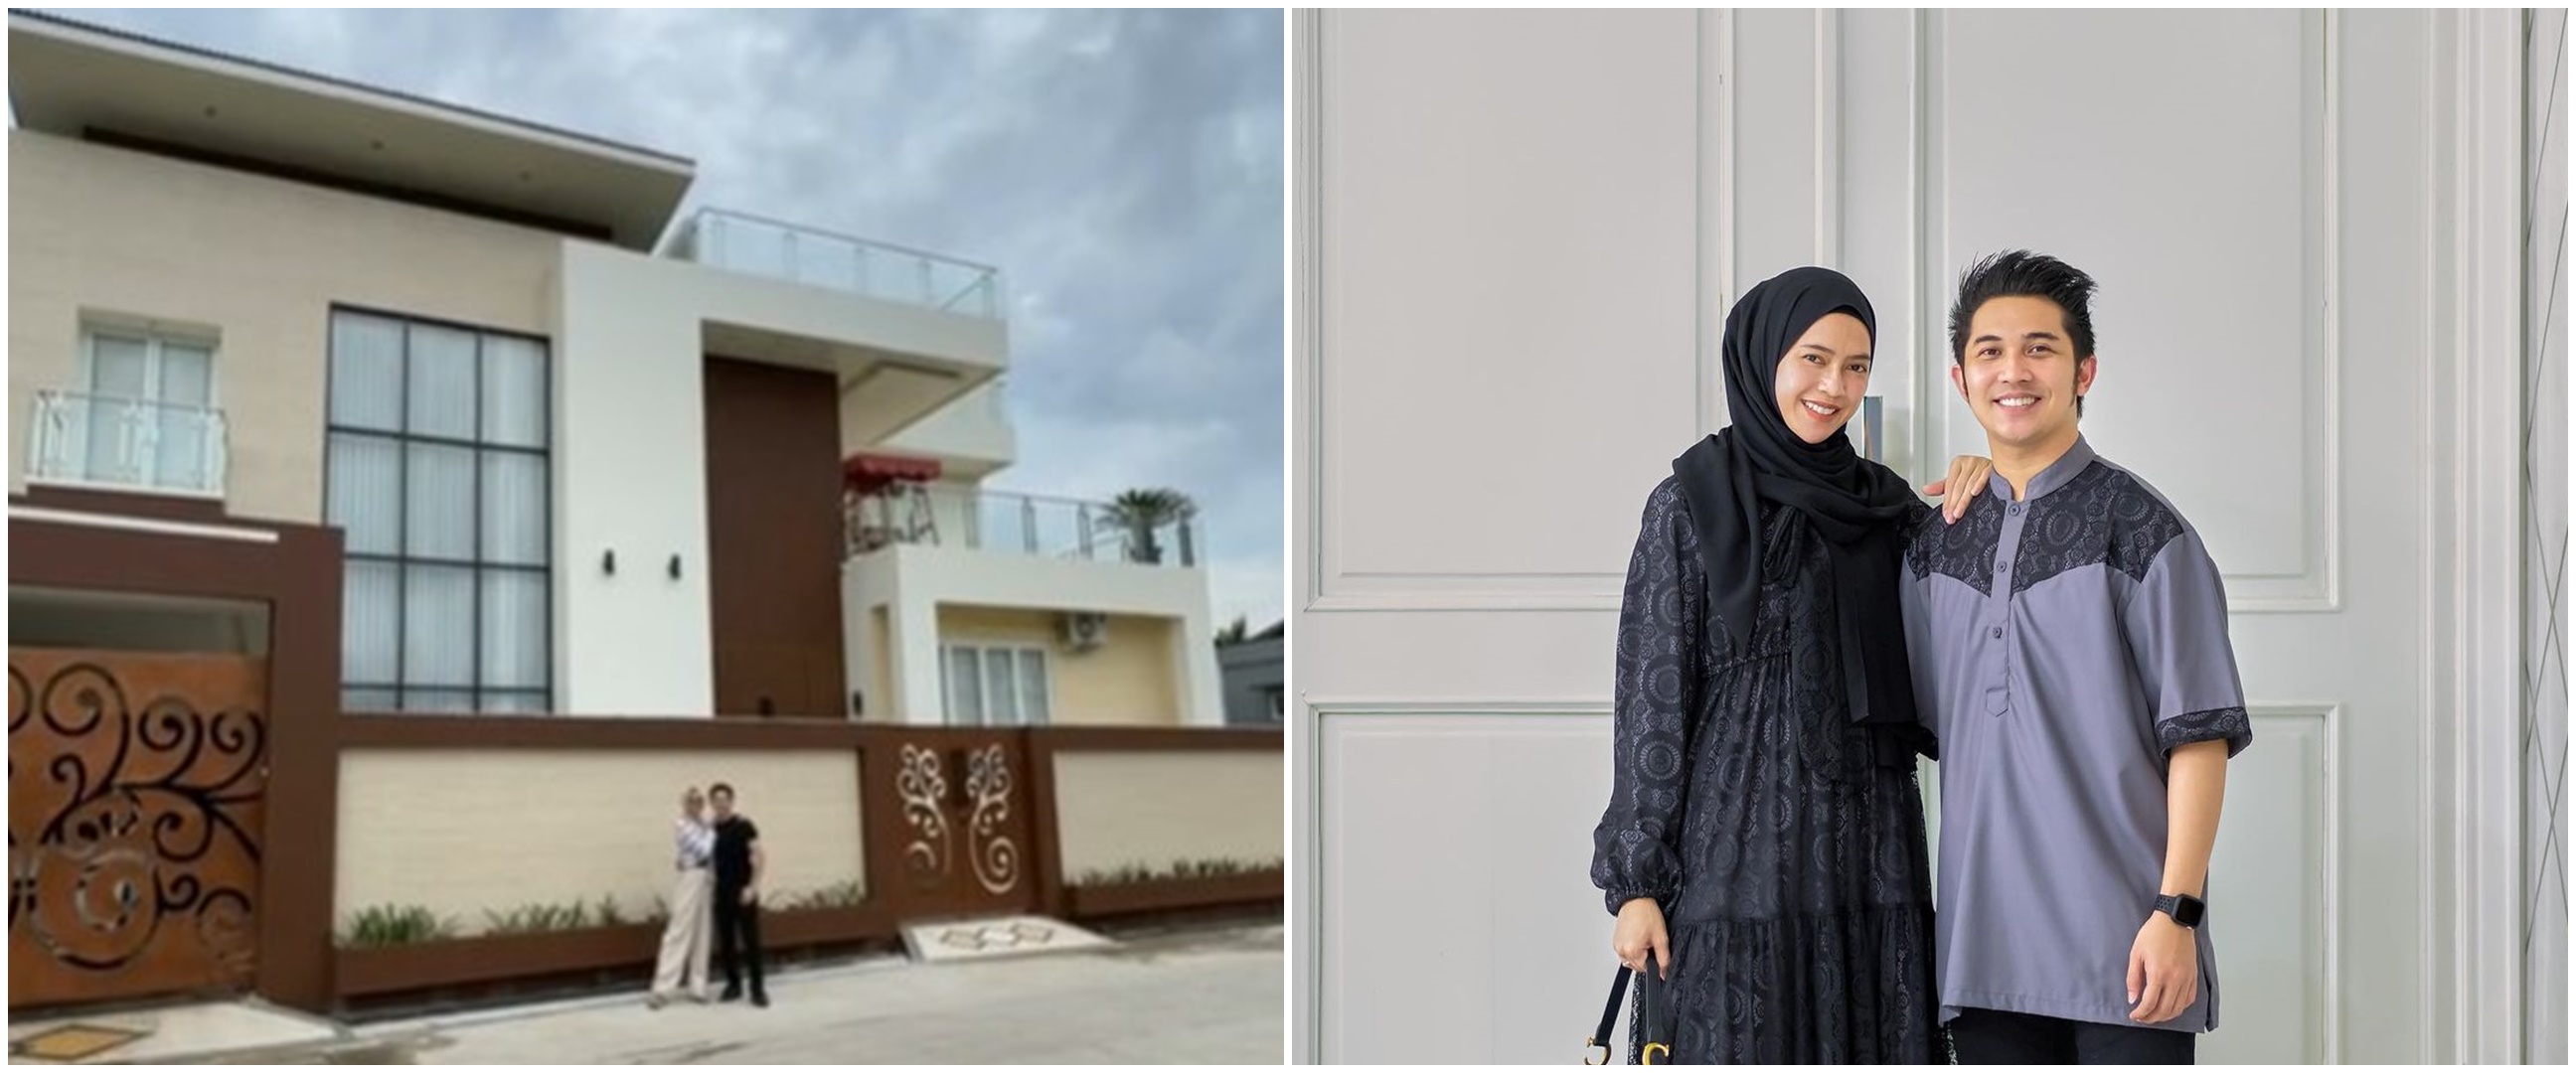 Dulu kerja di pasar kini bos skincare, 9 potret rumah Fatma Sarizar rooftopnya bak lapangan futsal